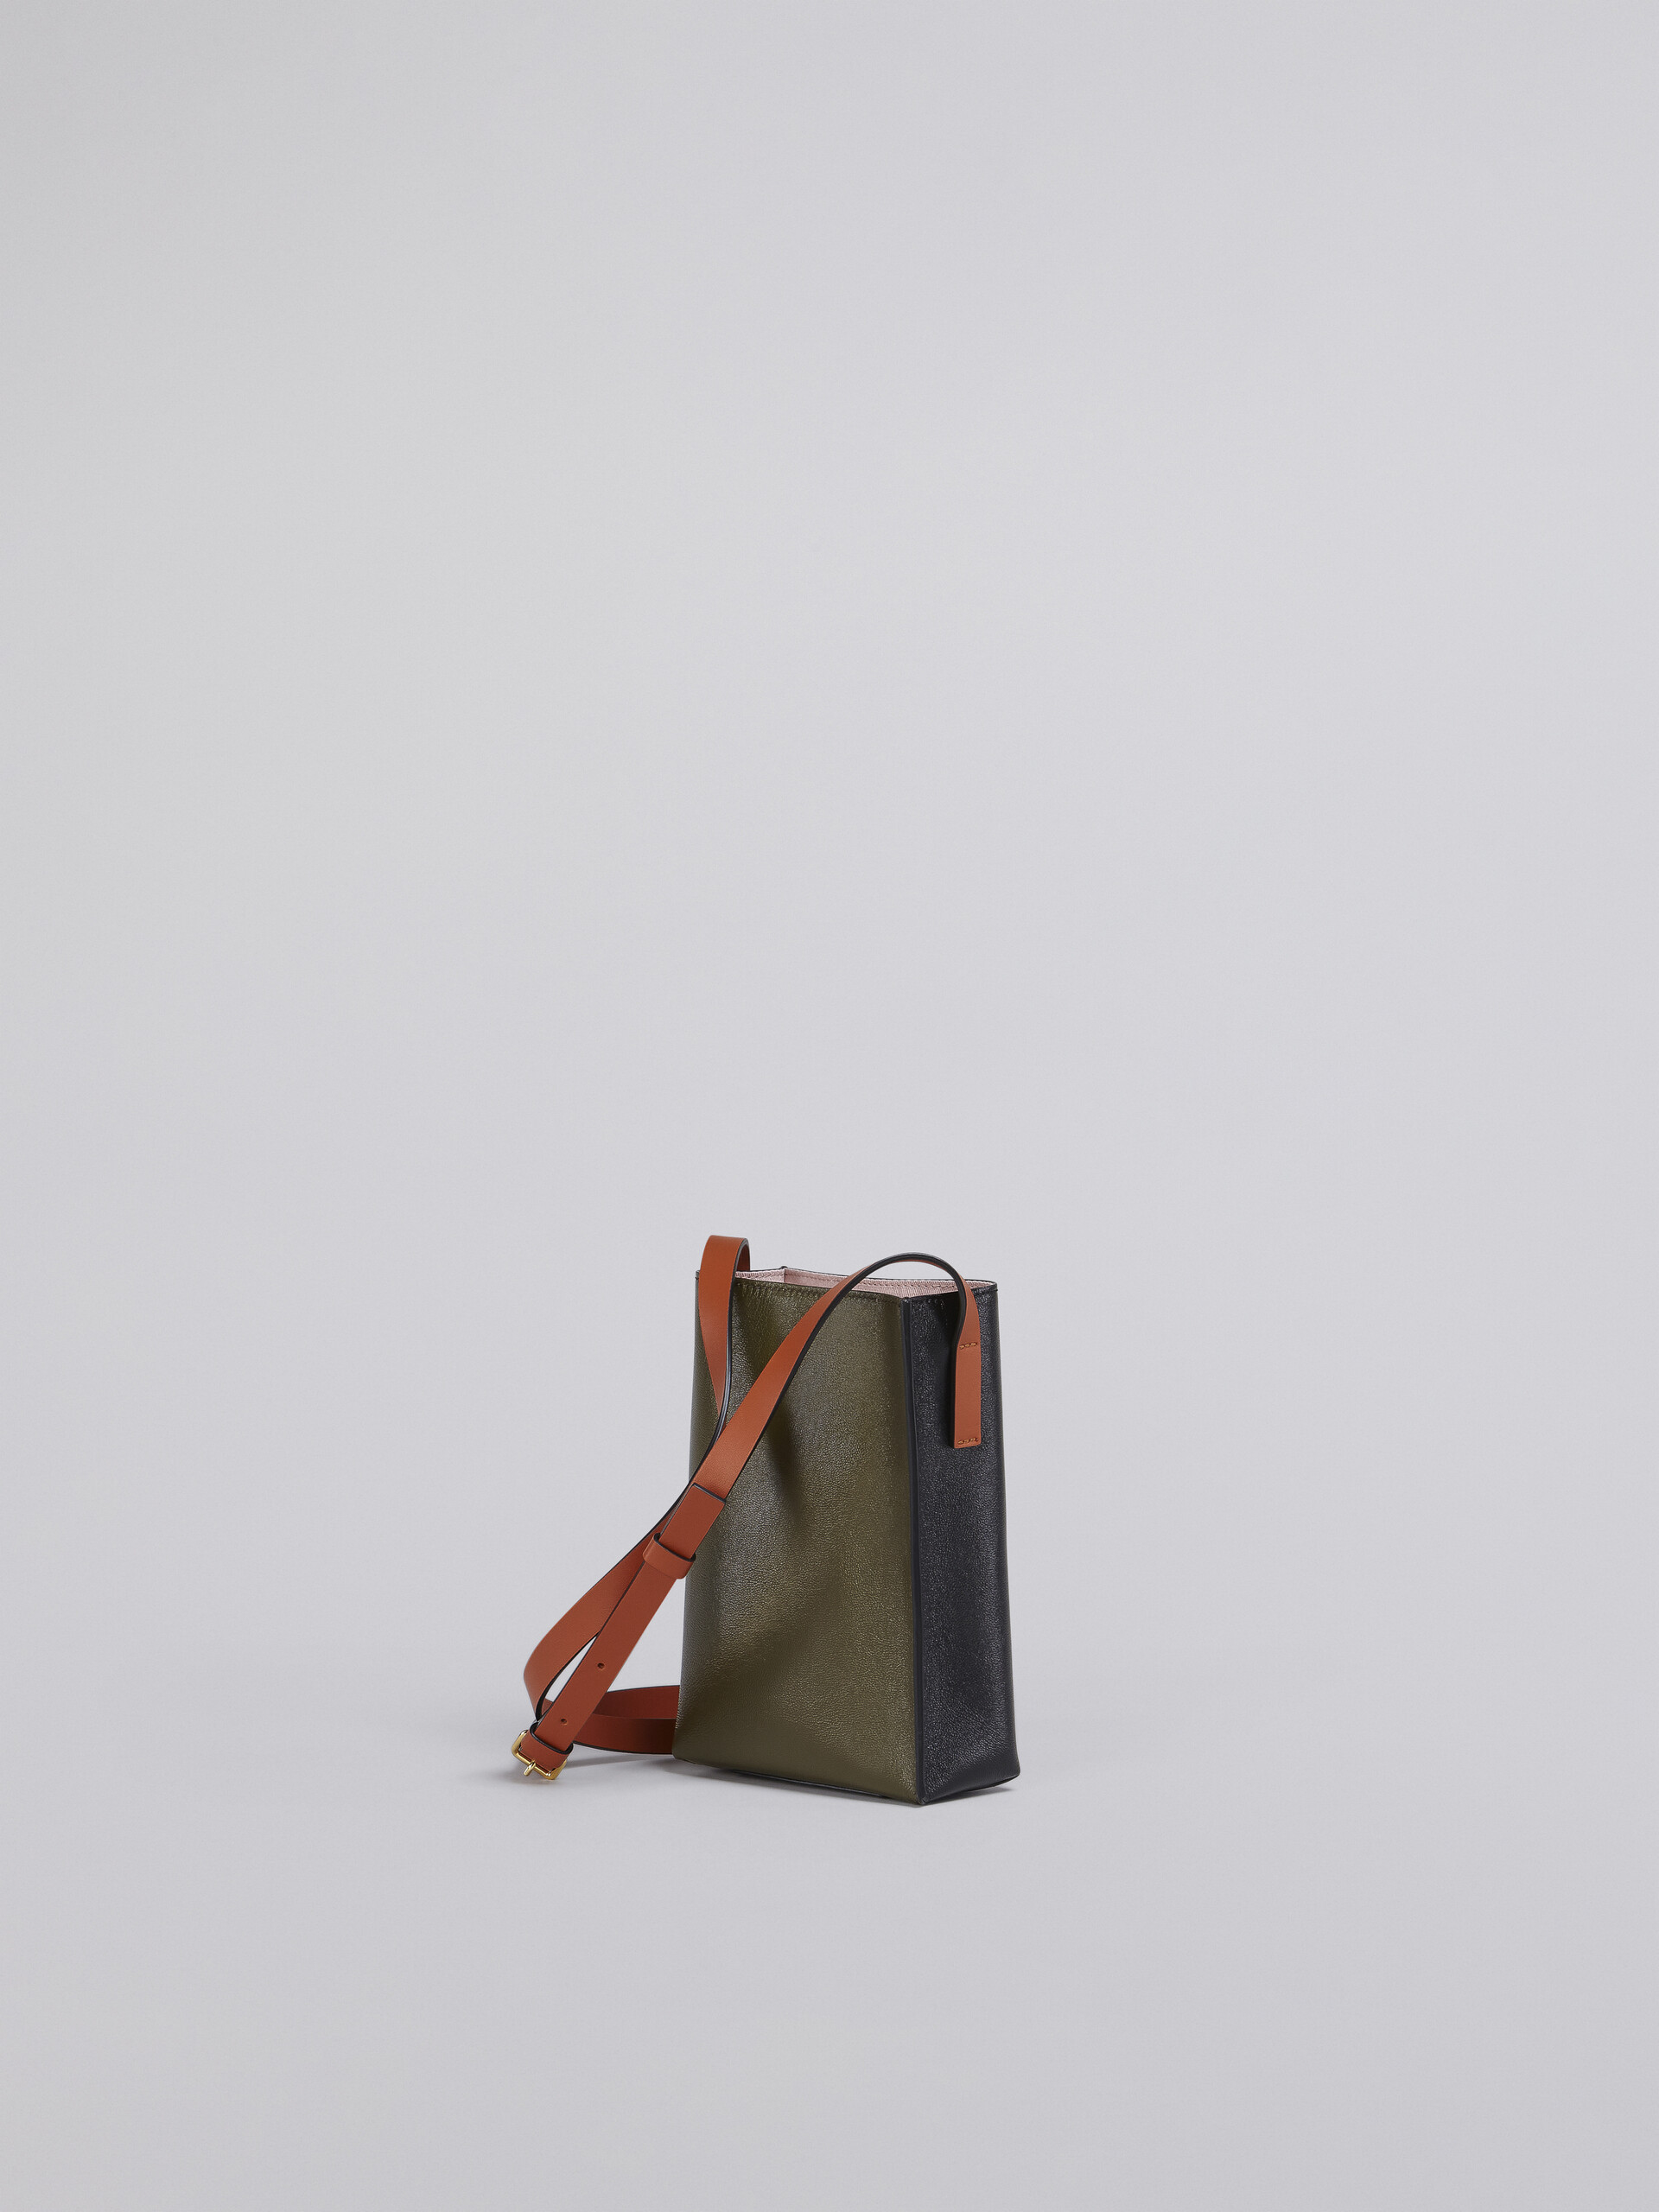 블랙 및 그린 가죽 MUSEO SOFT 나노 백 - Shoulder Bag - Image 3